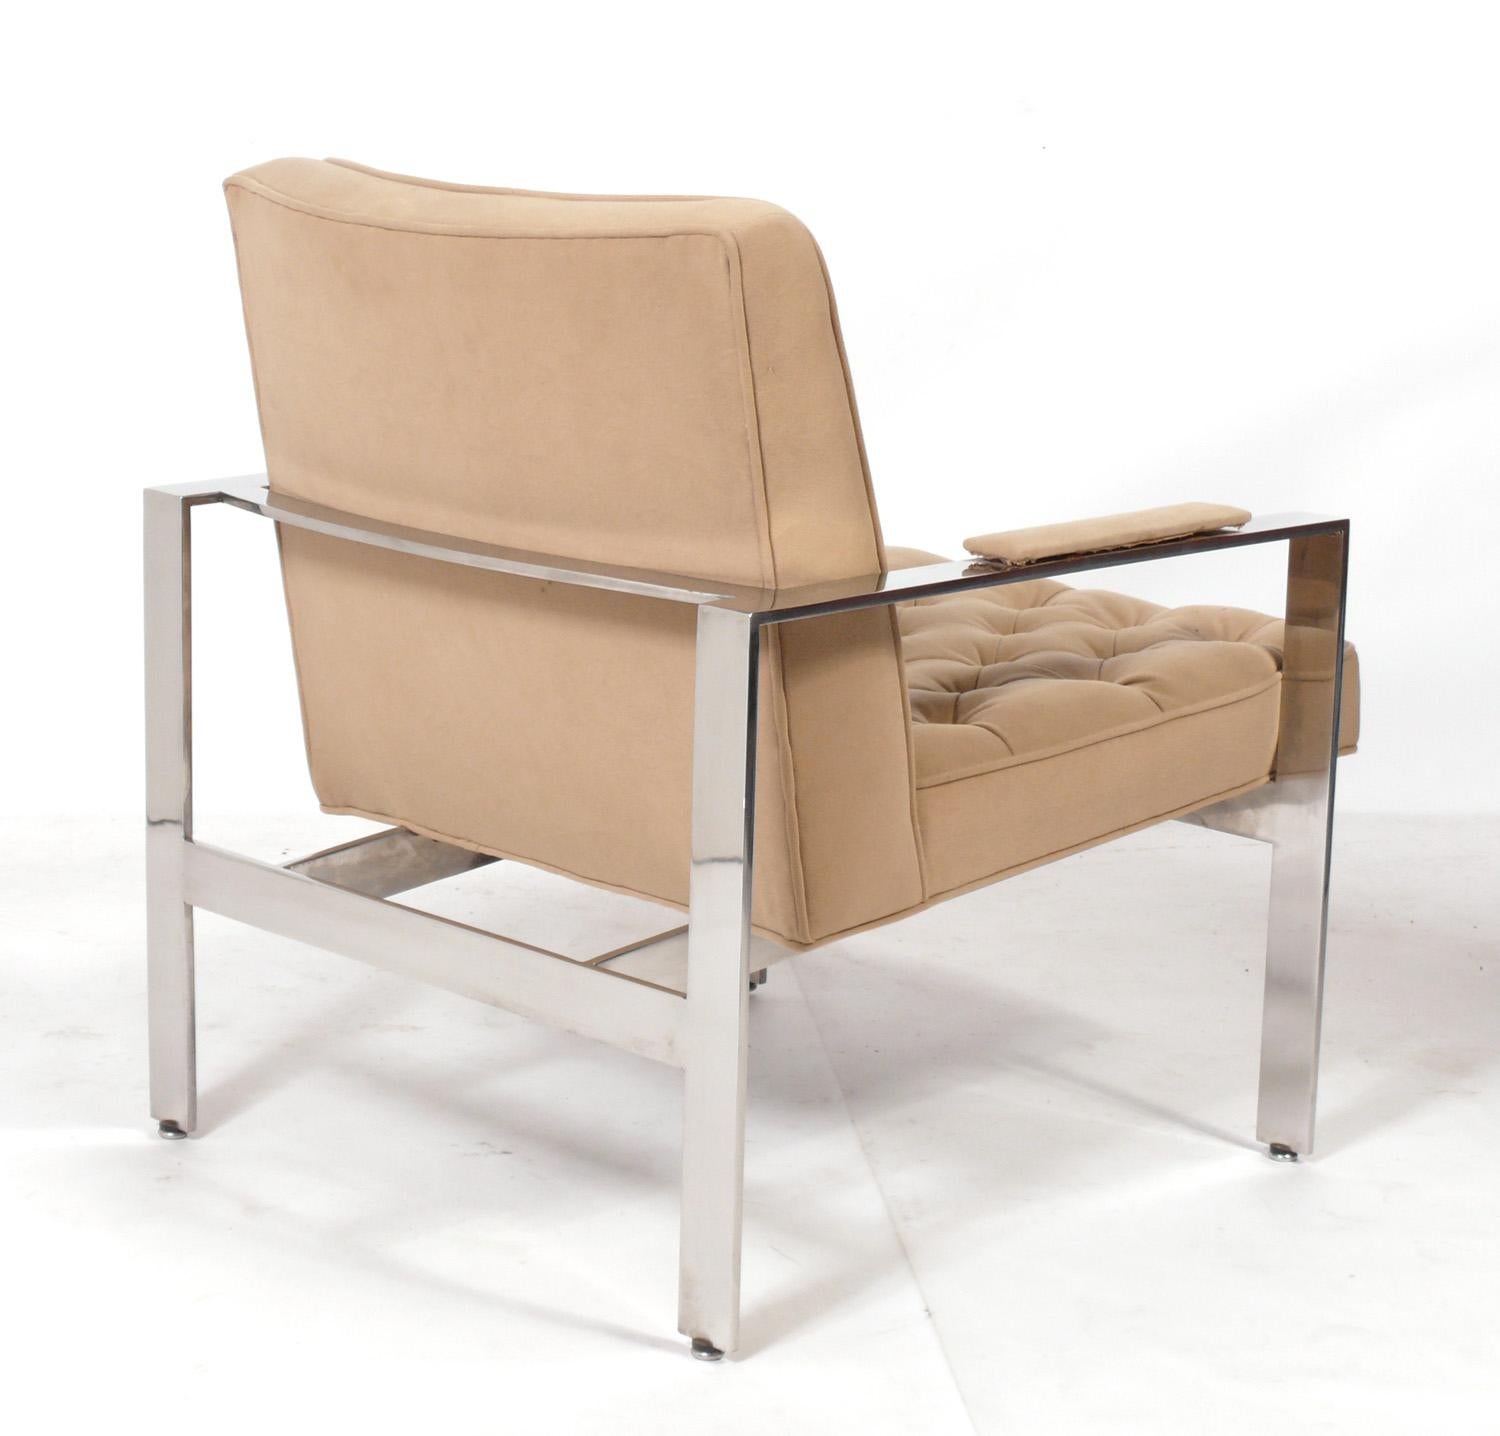 Clean Lined Tufted Chrome Lounge Chair, entworfen von Milo Baughman, Amerikaner, ca. 1960er Jahre. Es ist sehr schwer und gut verarbeitet. Dieser Stuhl wird gerade neu gepolstert und kann mit Ihrem Stoff ergänzt werden. Schicken Sie uns bitte nach